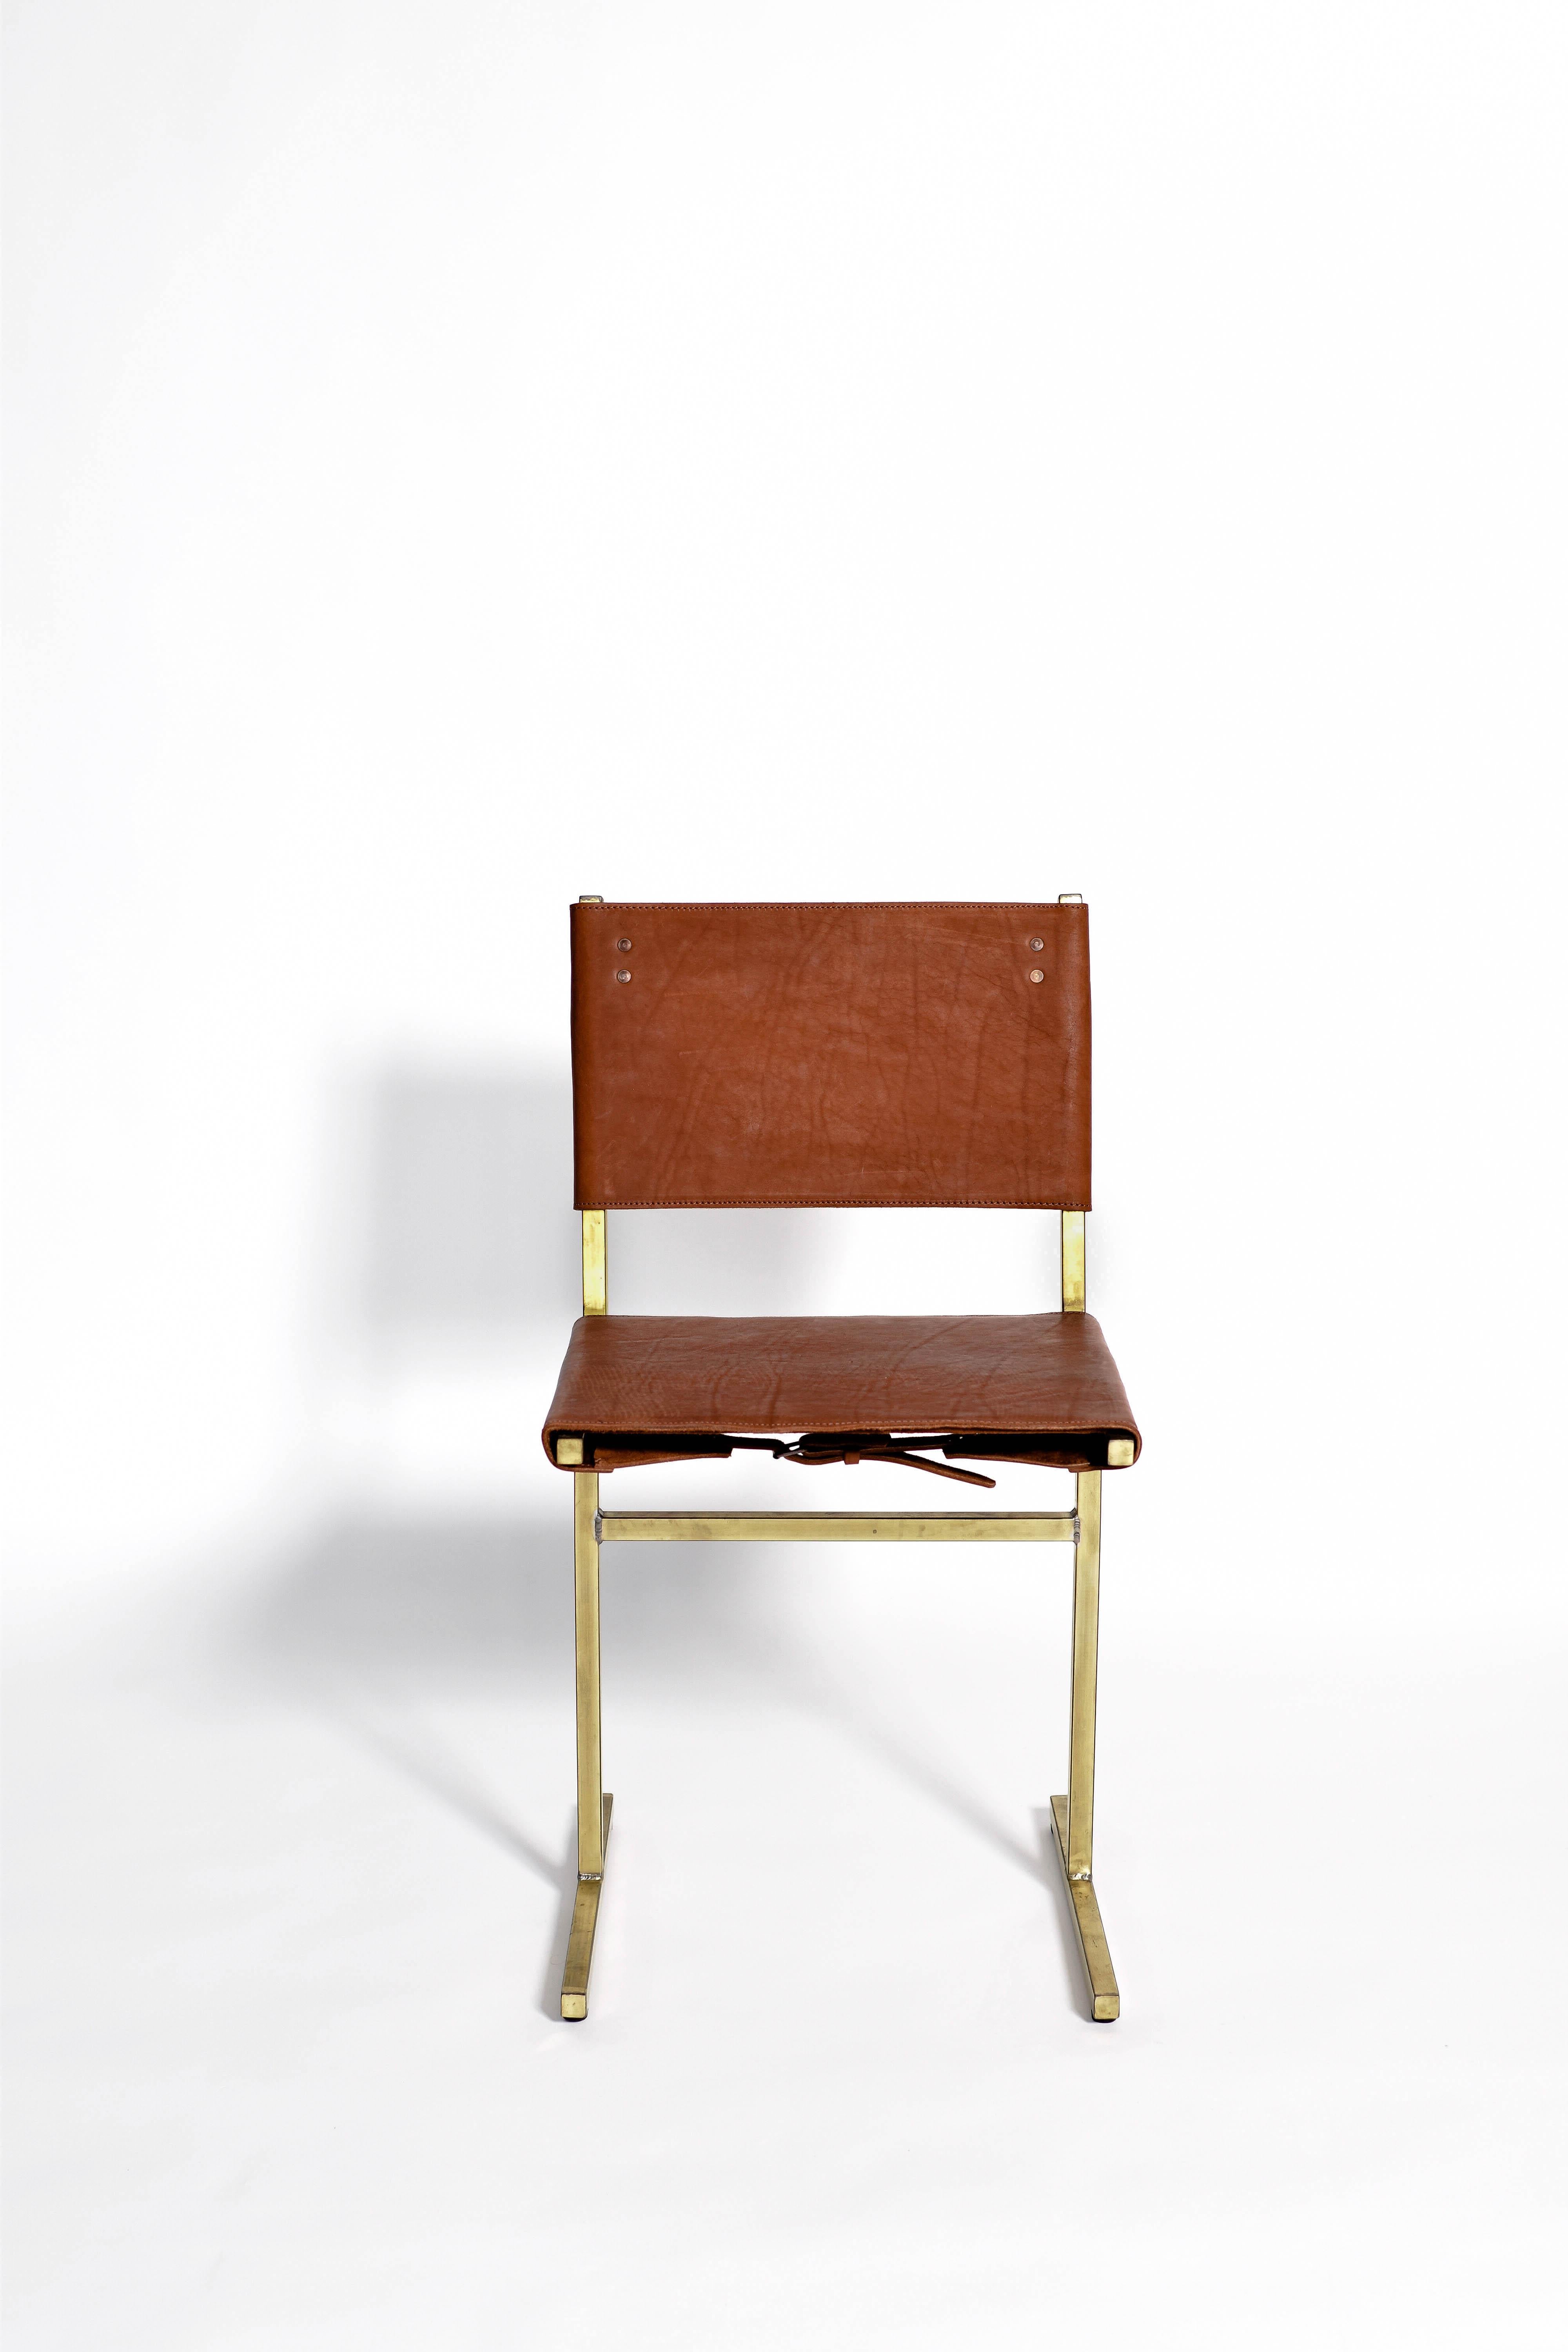 Moss Green Memento Chair, Jesse Sanderson 1